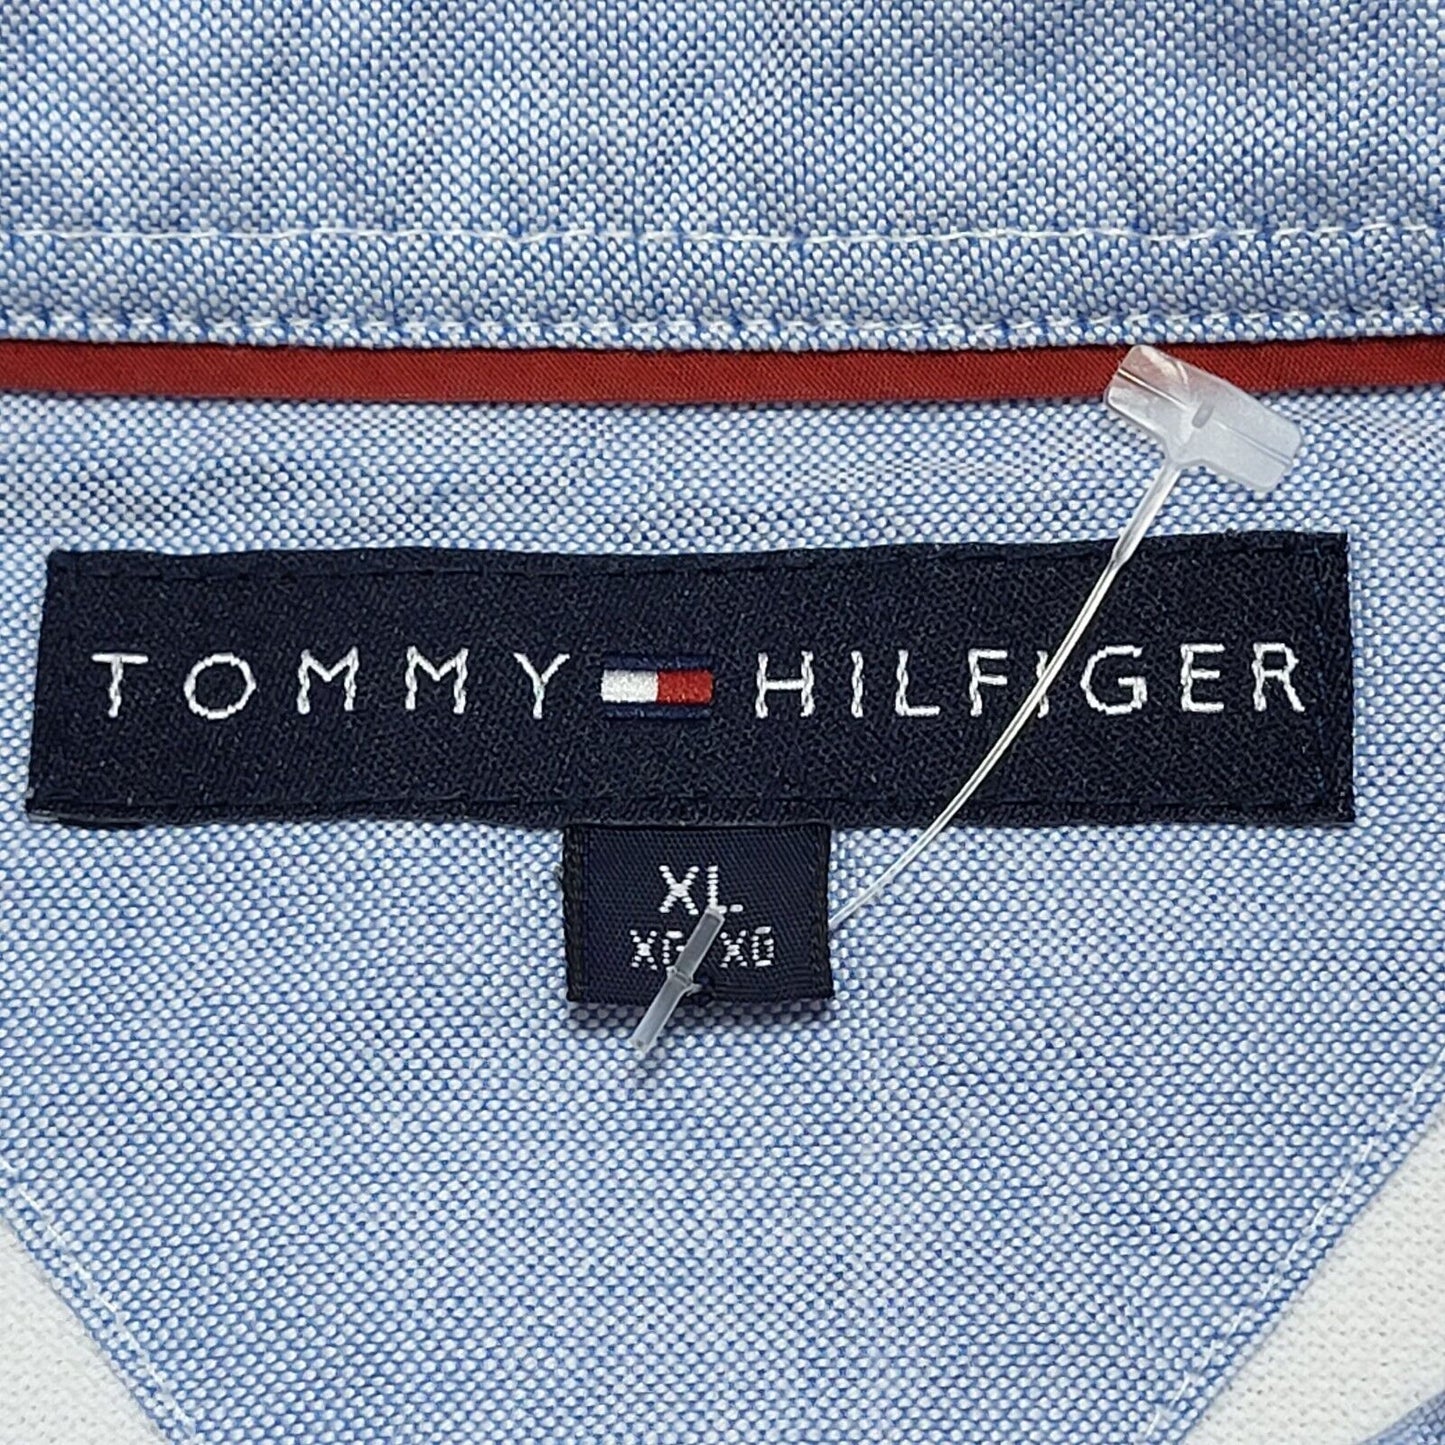 Tommy Hilfiger Polo (XL)